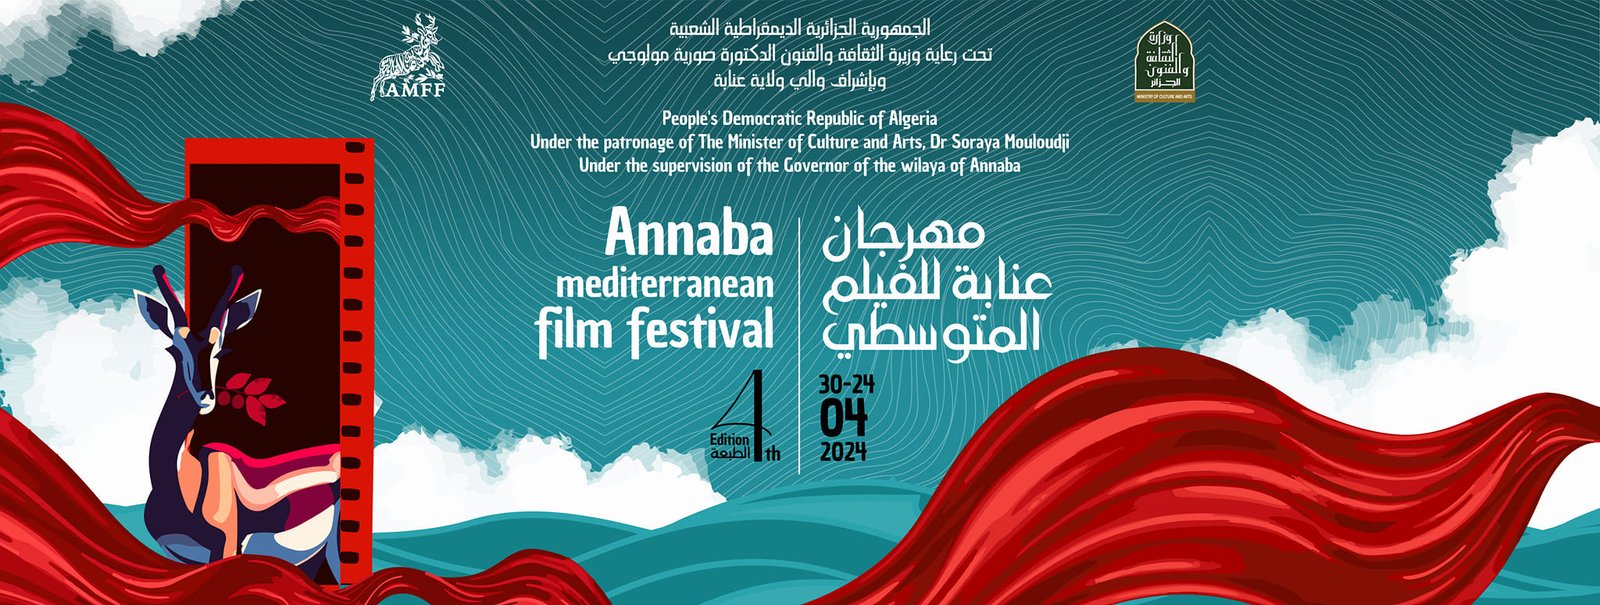 festival-mediterranneen-cinema-annaba